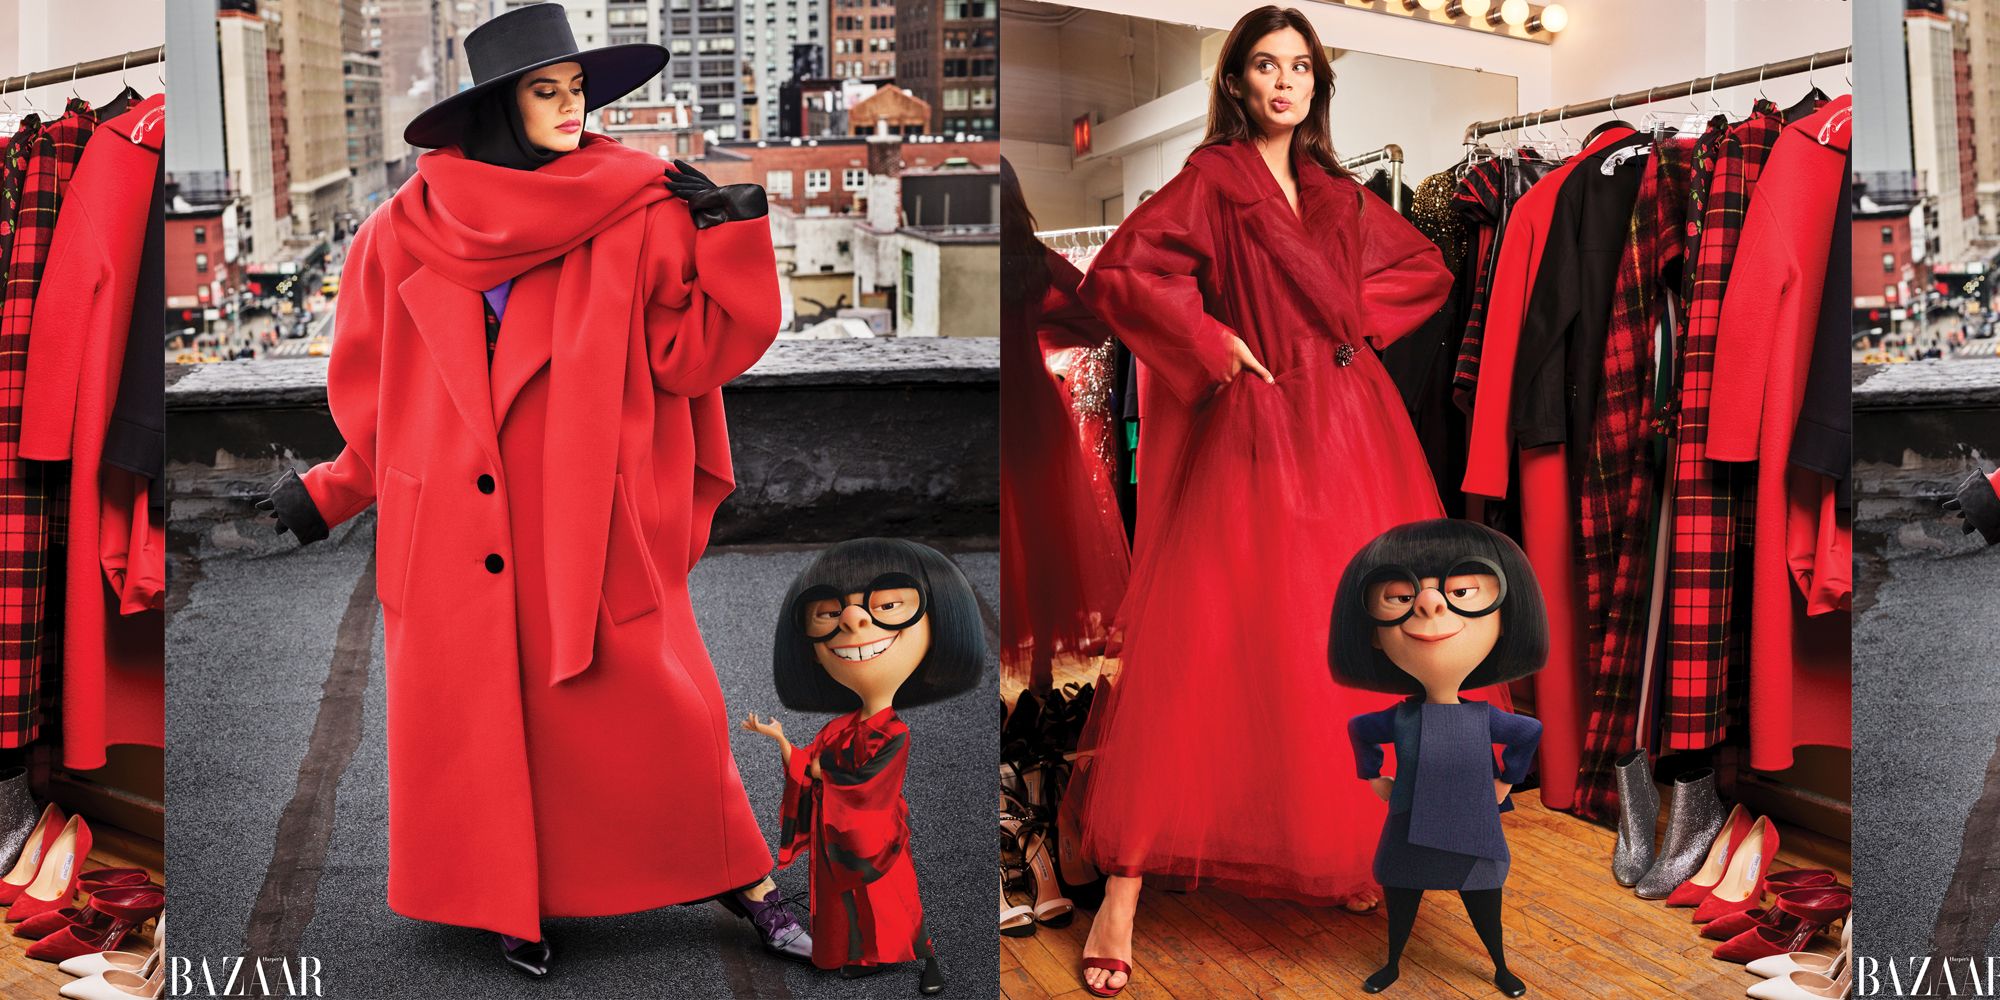 Disney's 'The Incredibles' Edna Mode - Edna Mode In Harper's